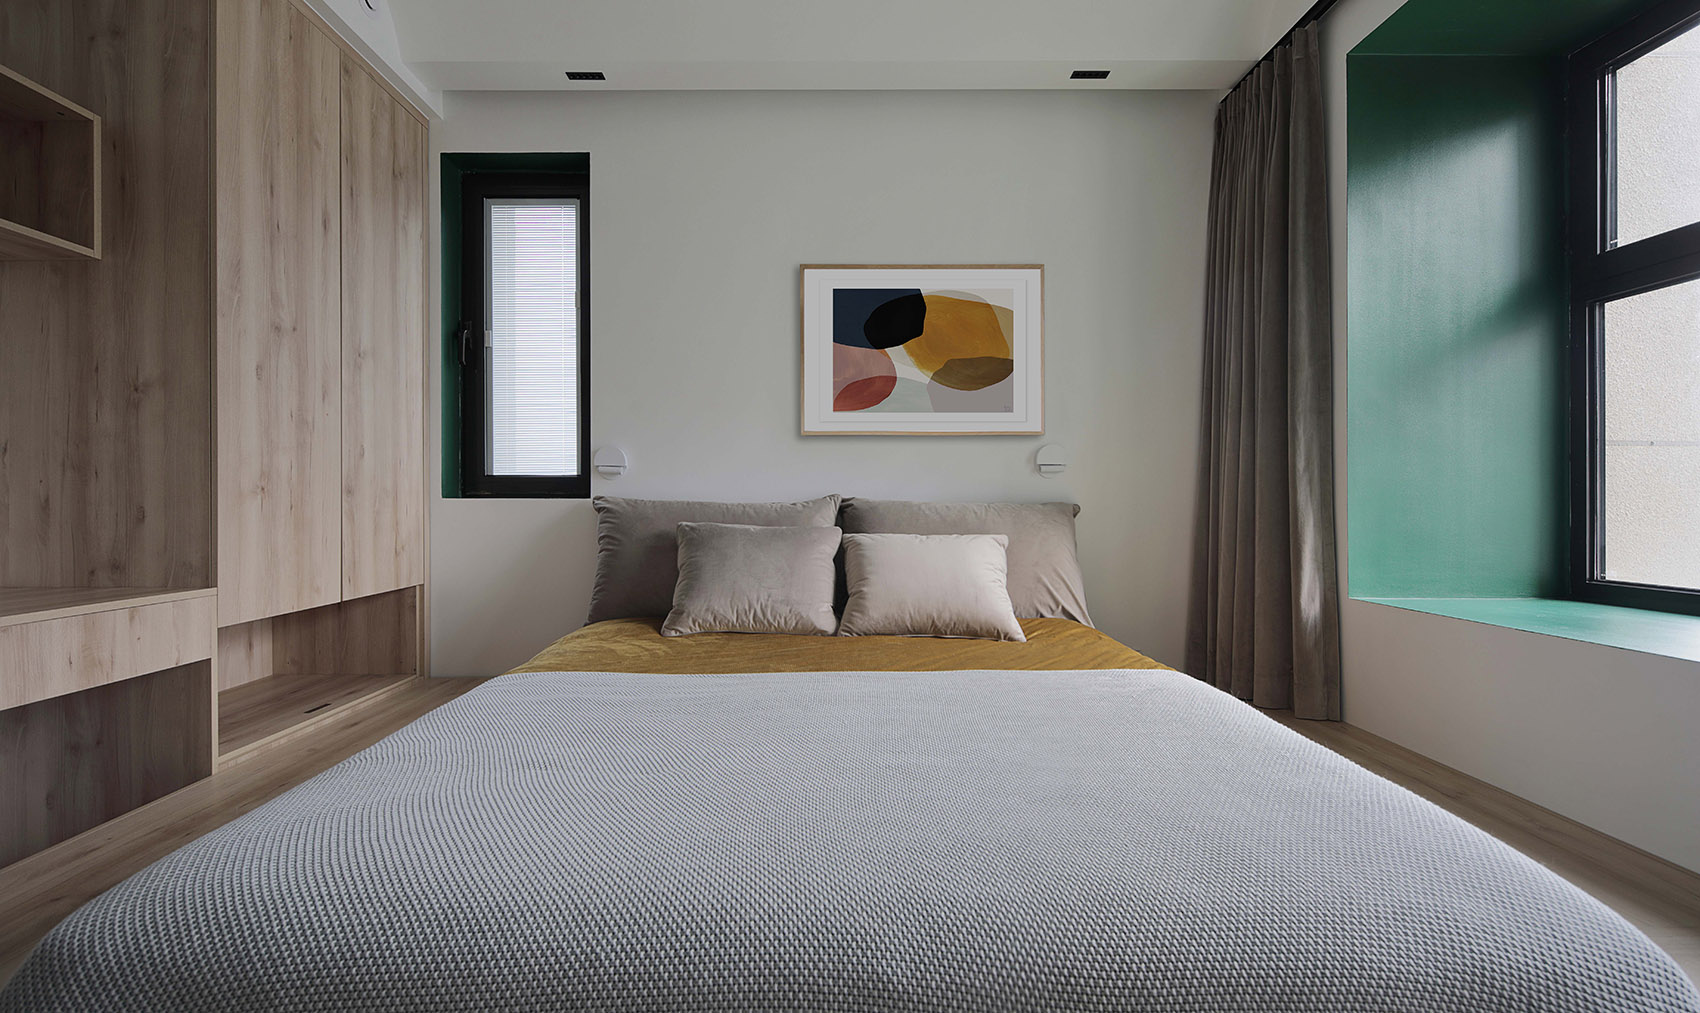 主卧设计师用现代美学的态度，以色块的形式填充空间，营造出舒适的生活氛围。